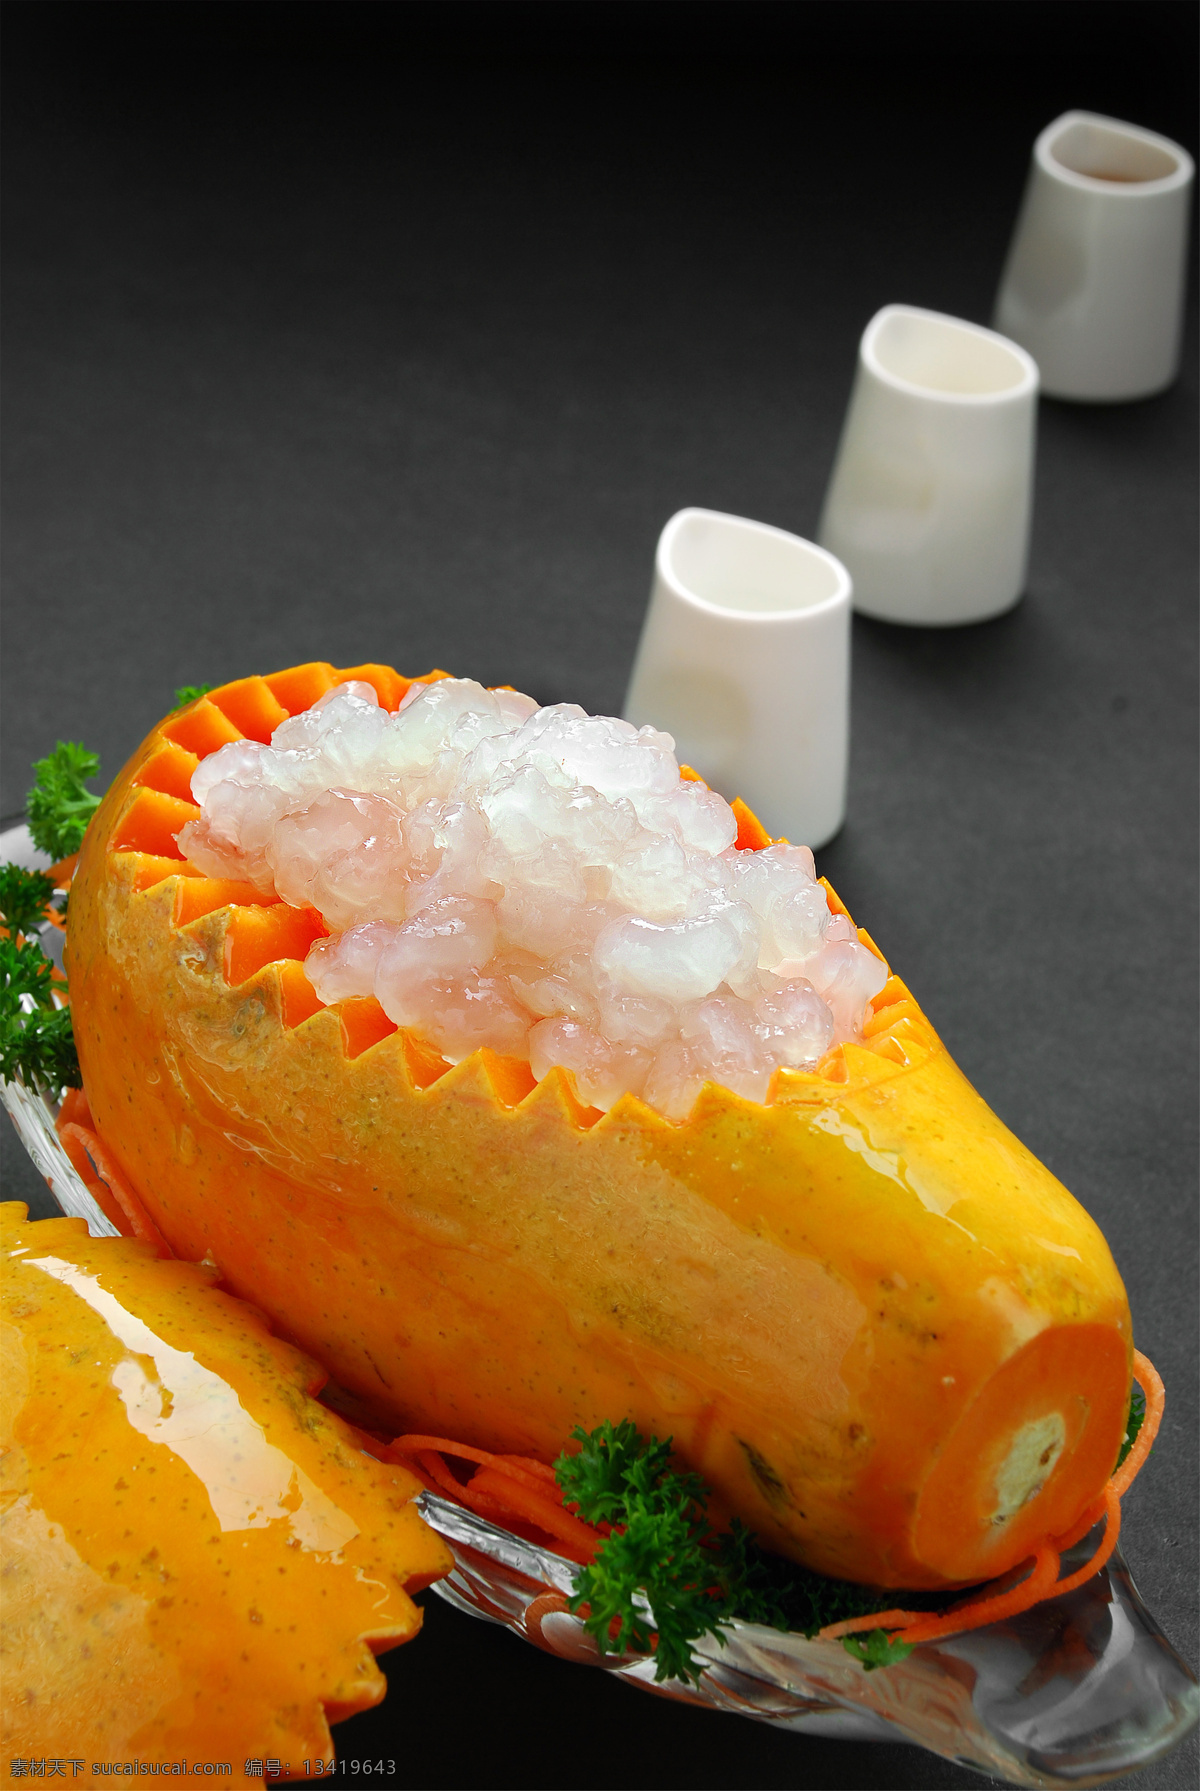 木瓜炖雪蛤 美食 传统美食 餐饮美食 高清菜谱用图